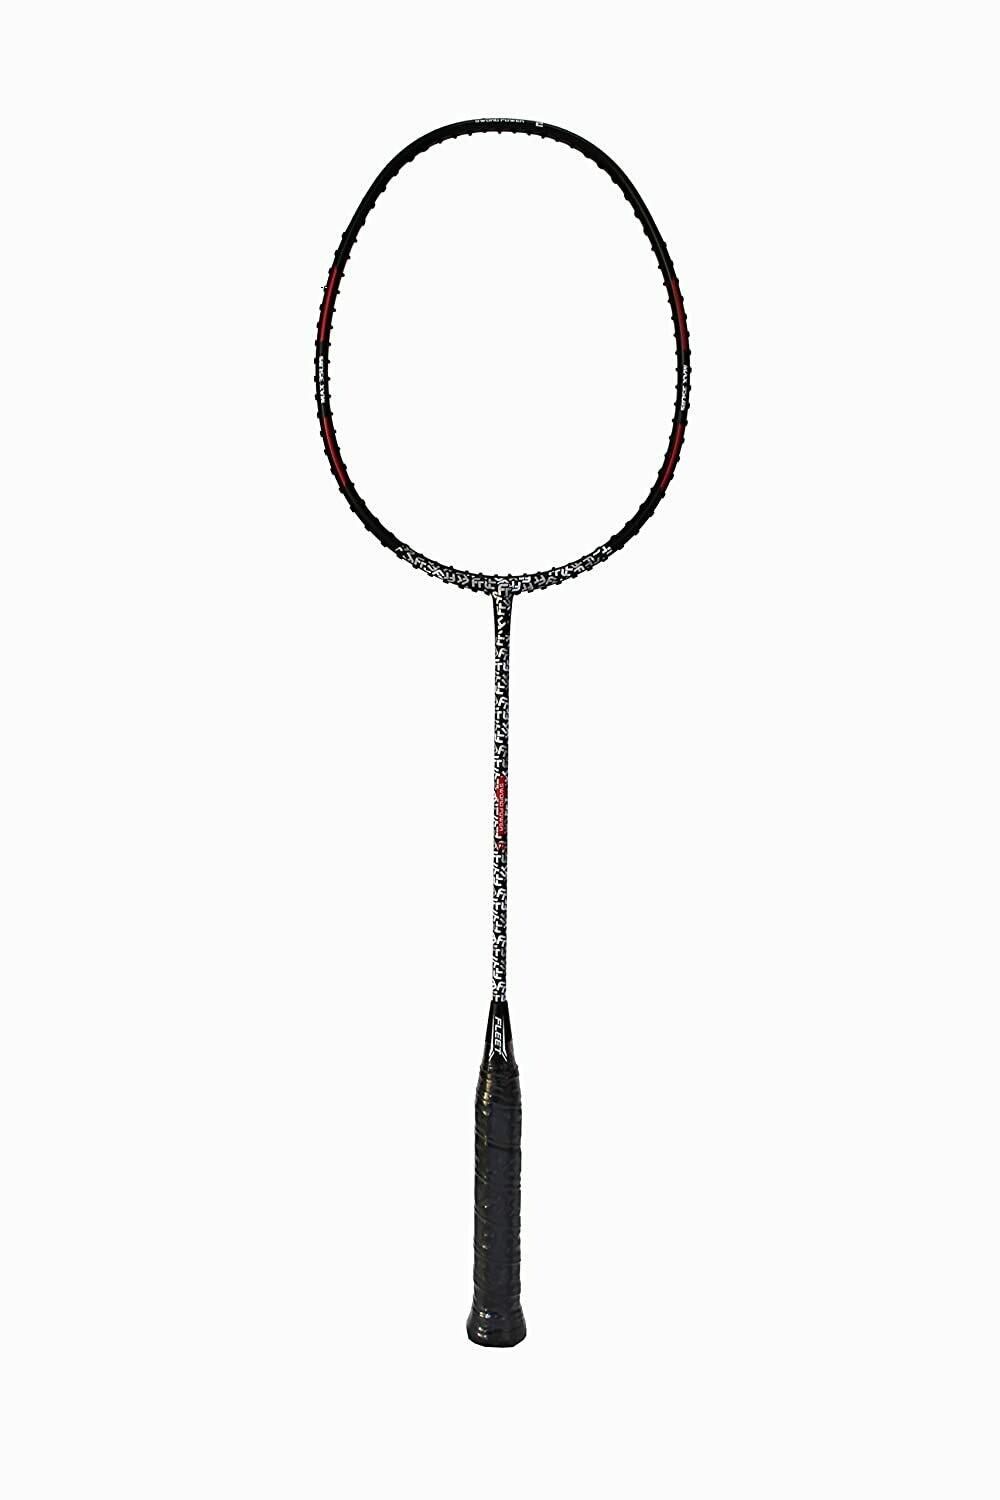 Fleet Sword Power 2 Professional Unstrung Badminton Racquet (Maximum 35 Lbs Frame)